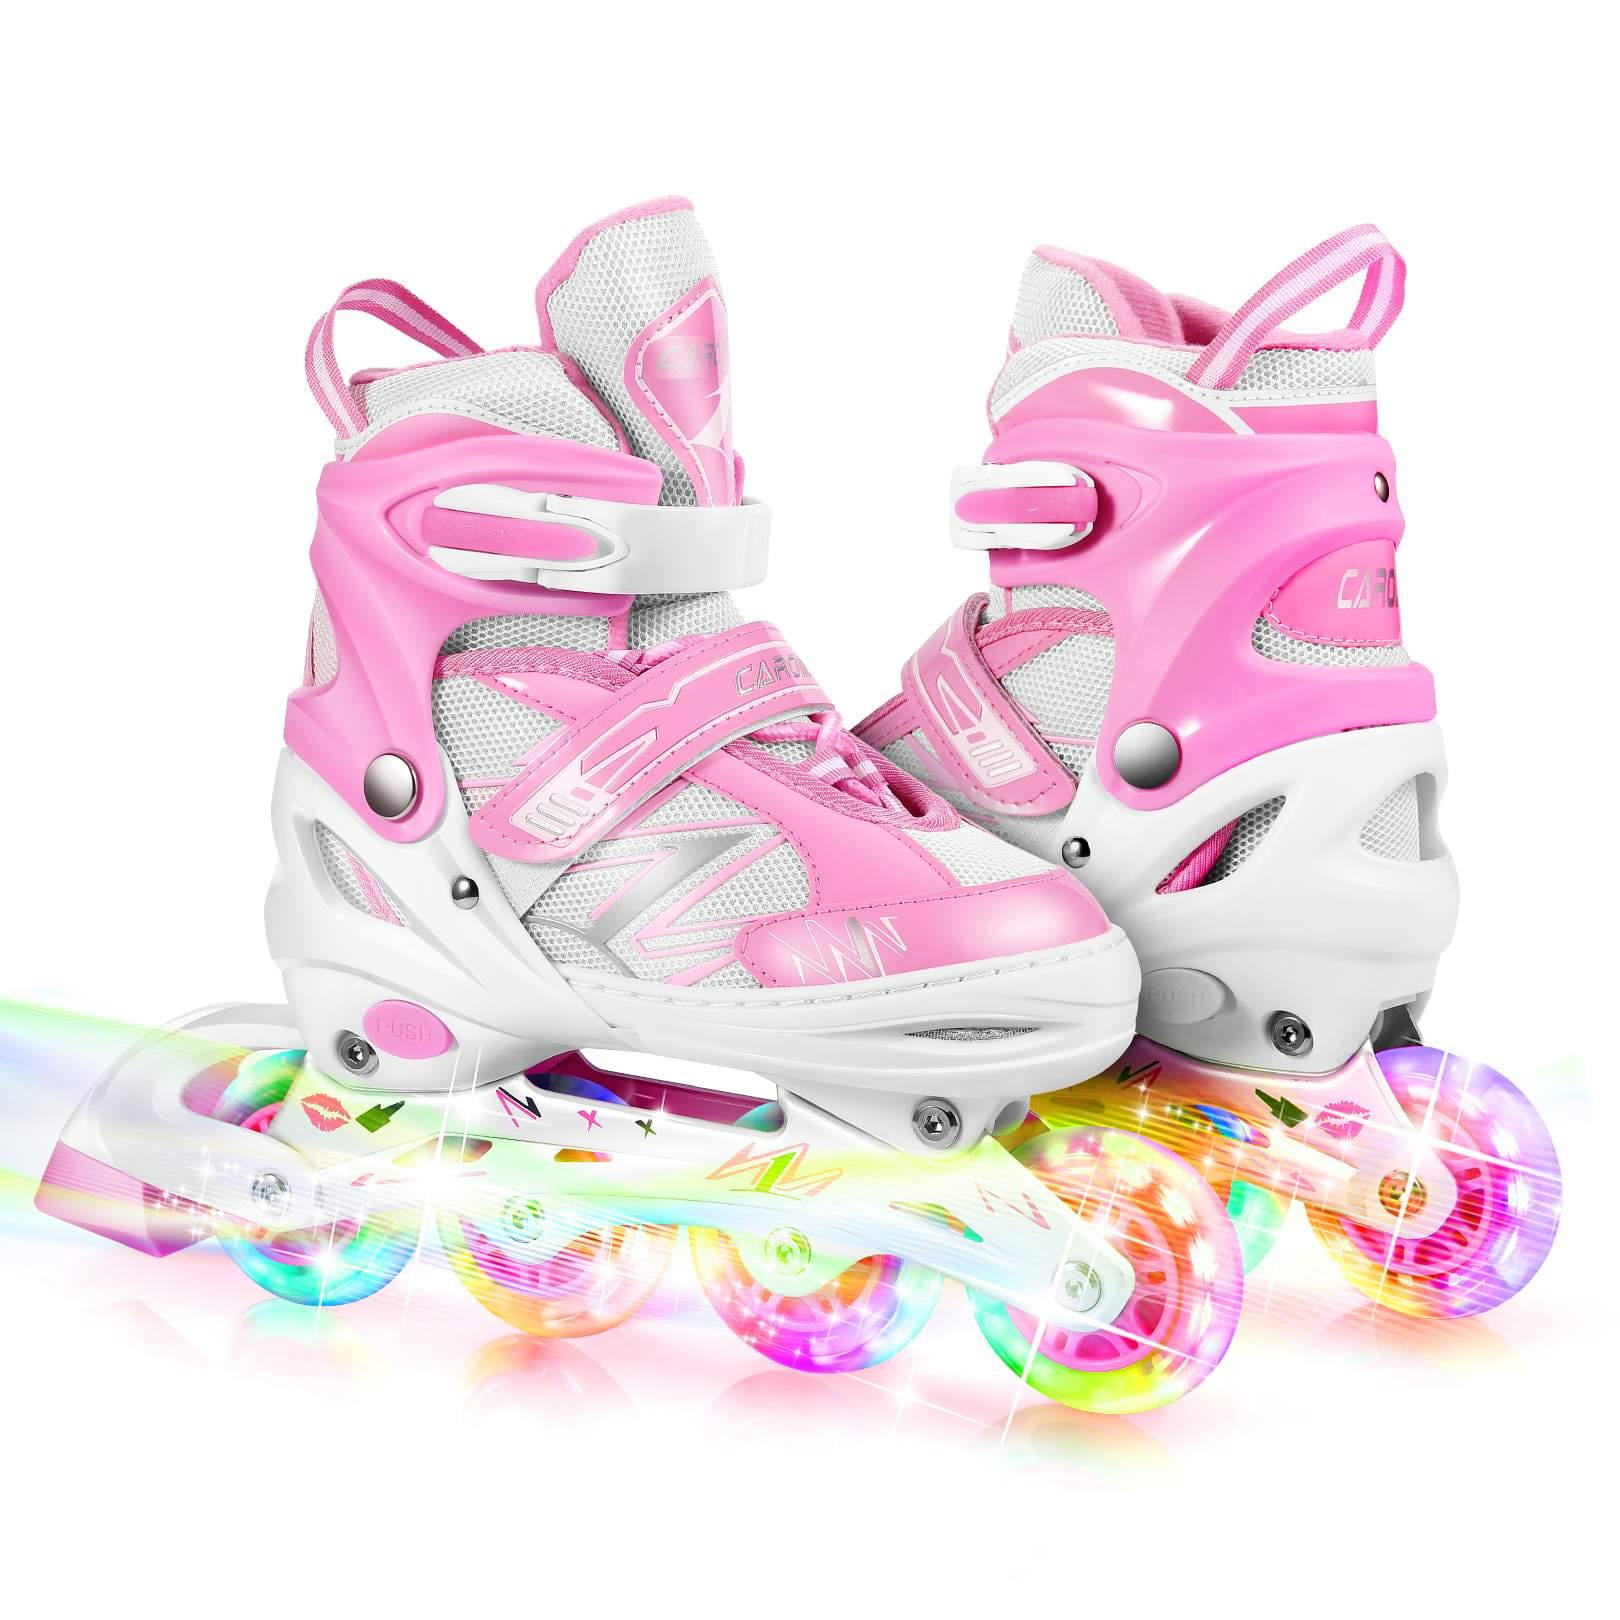 Adjustable Roller Blades Inline Skate Shoes Caroma Inline Skates for Kid Adult 